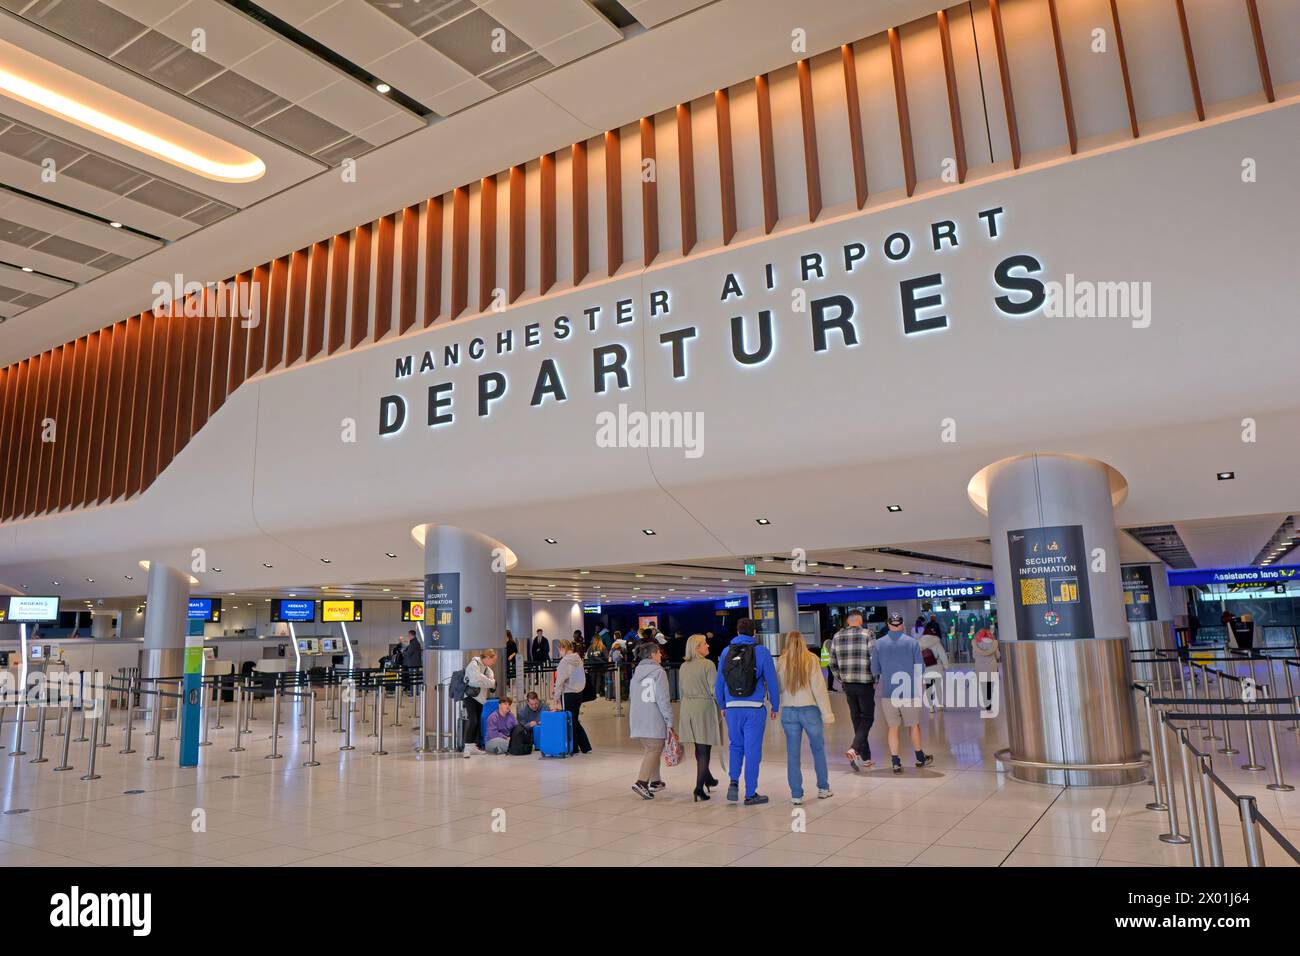 Hall des départs du terminal 2 de l'aéroport de Manchester, Angleterre, Royaume-Uni. Banque D'Images